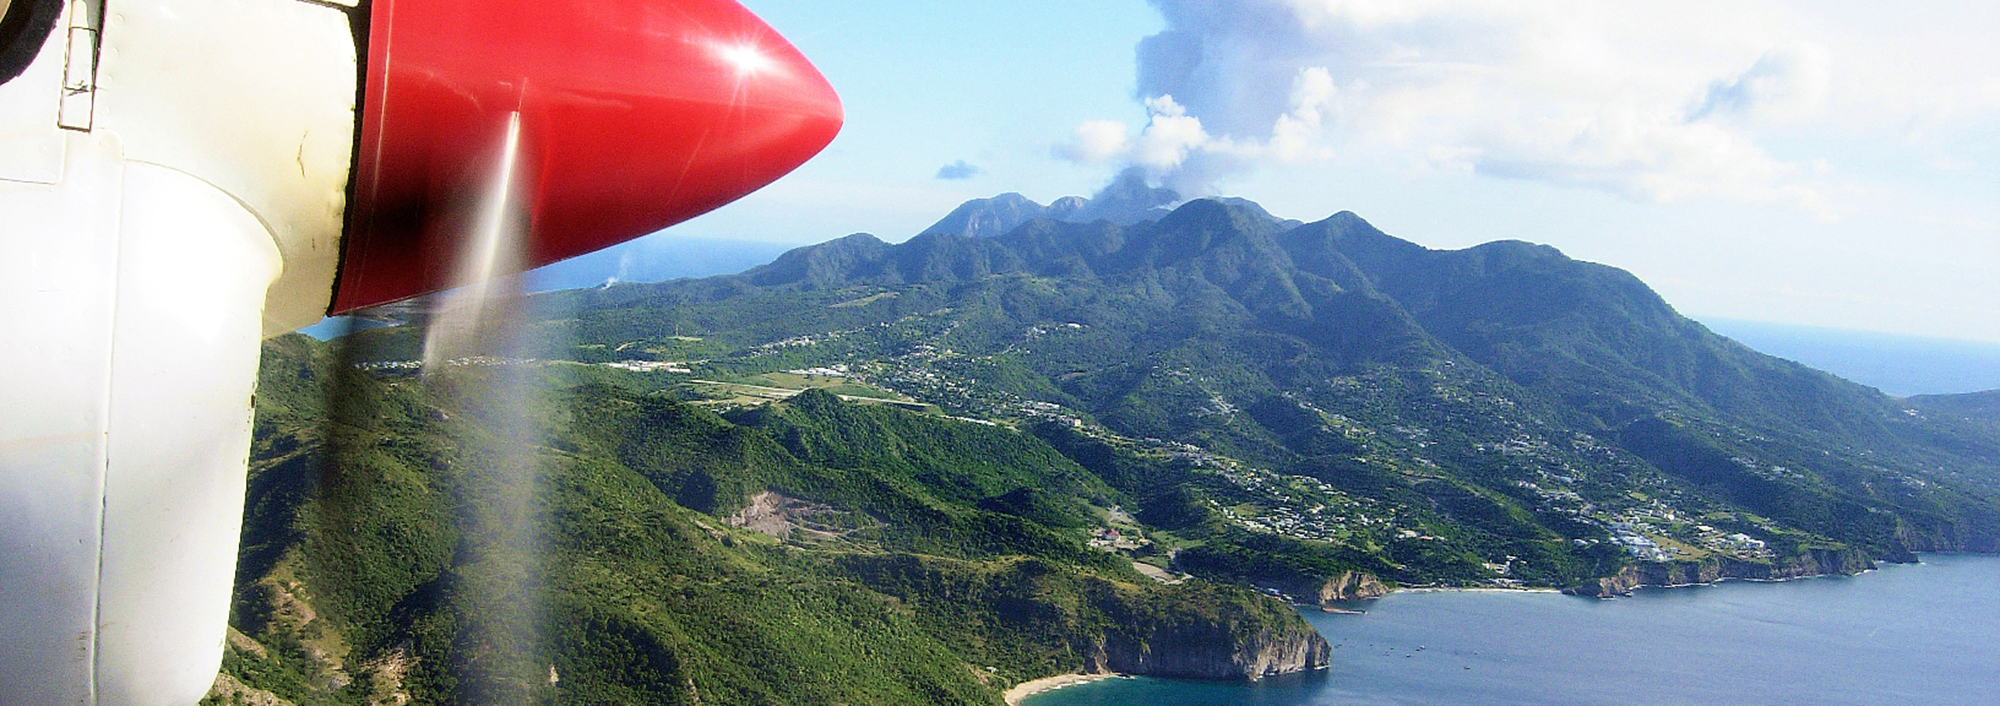 Anflug mit einem Kleinflugzeug auf die Insel Montserrat